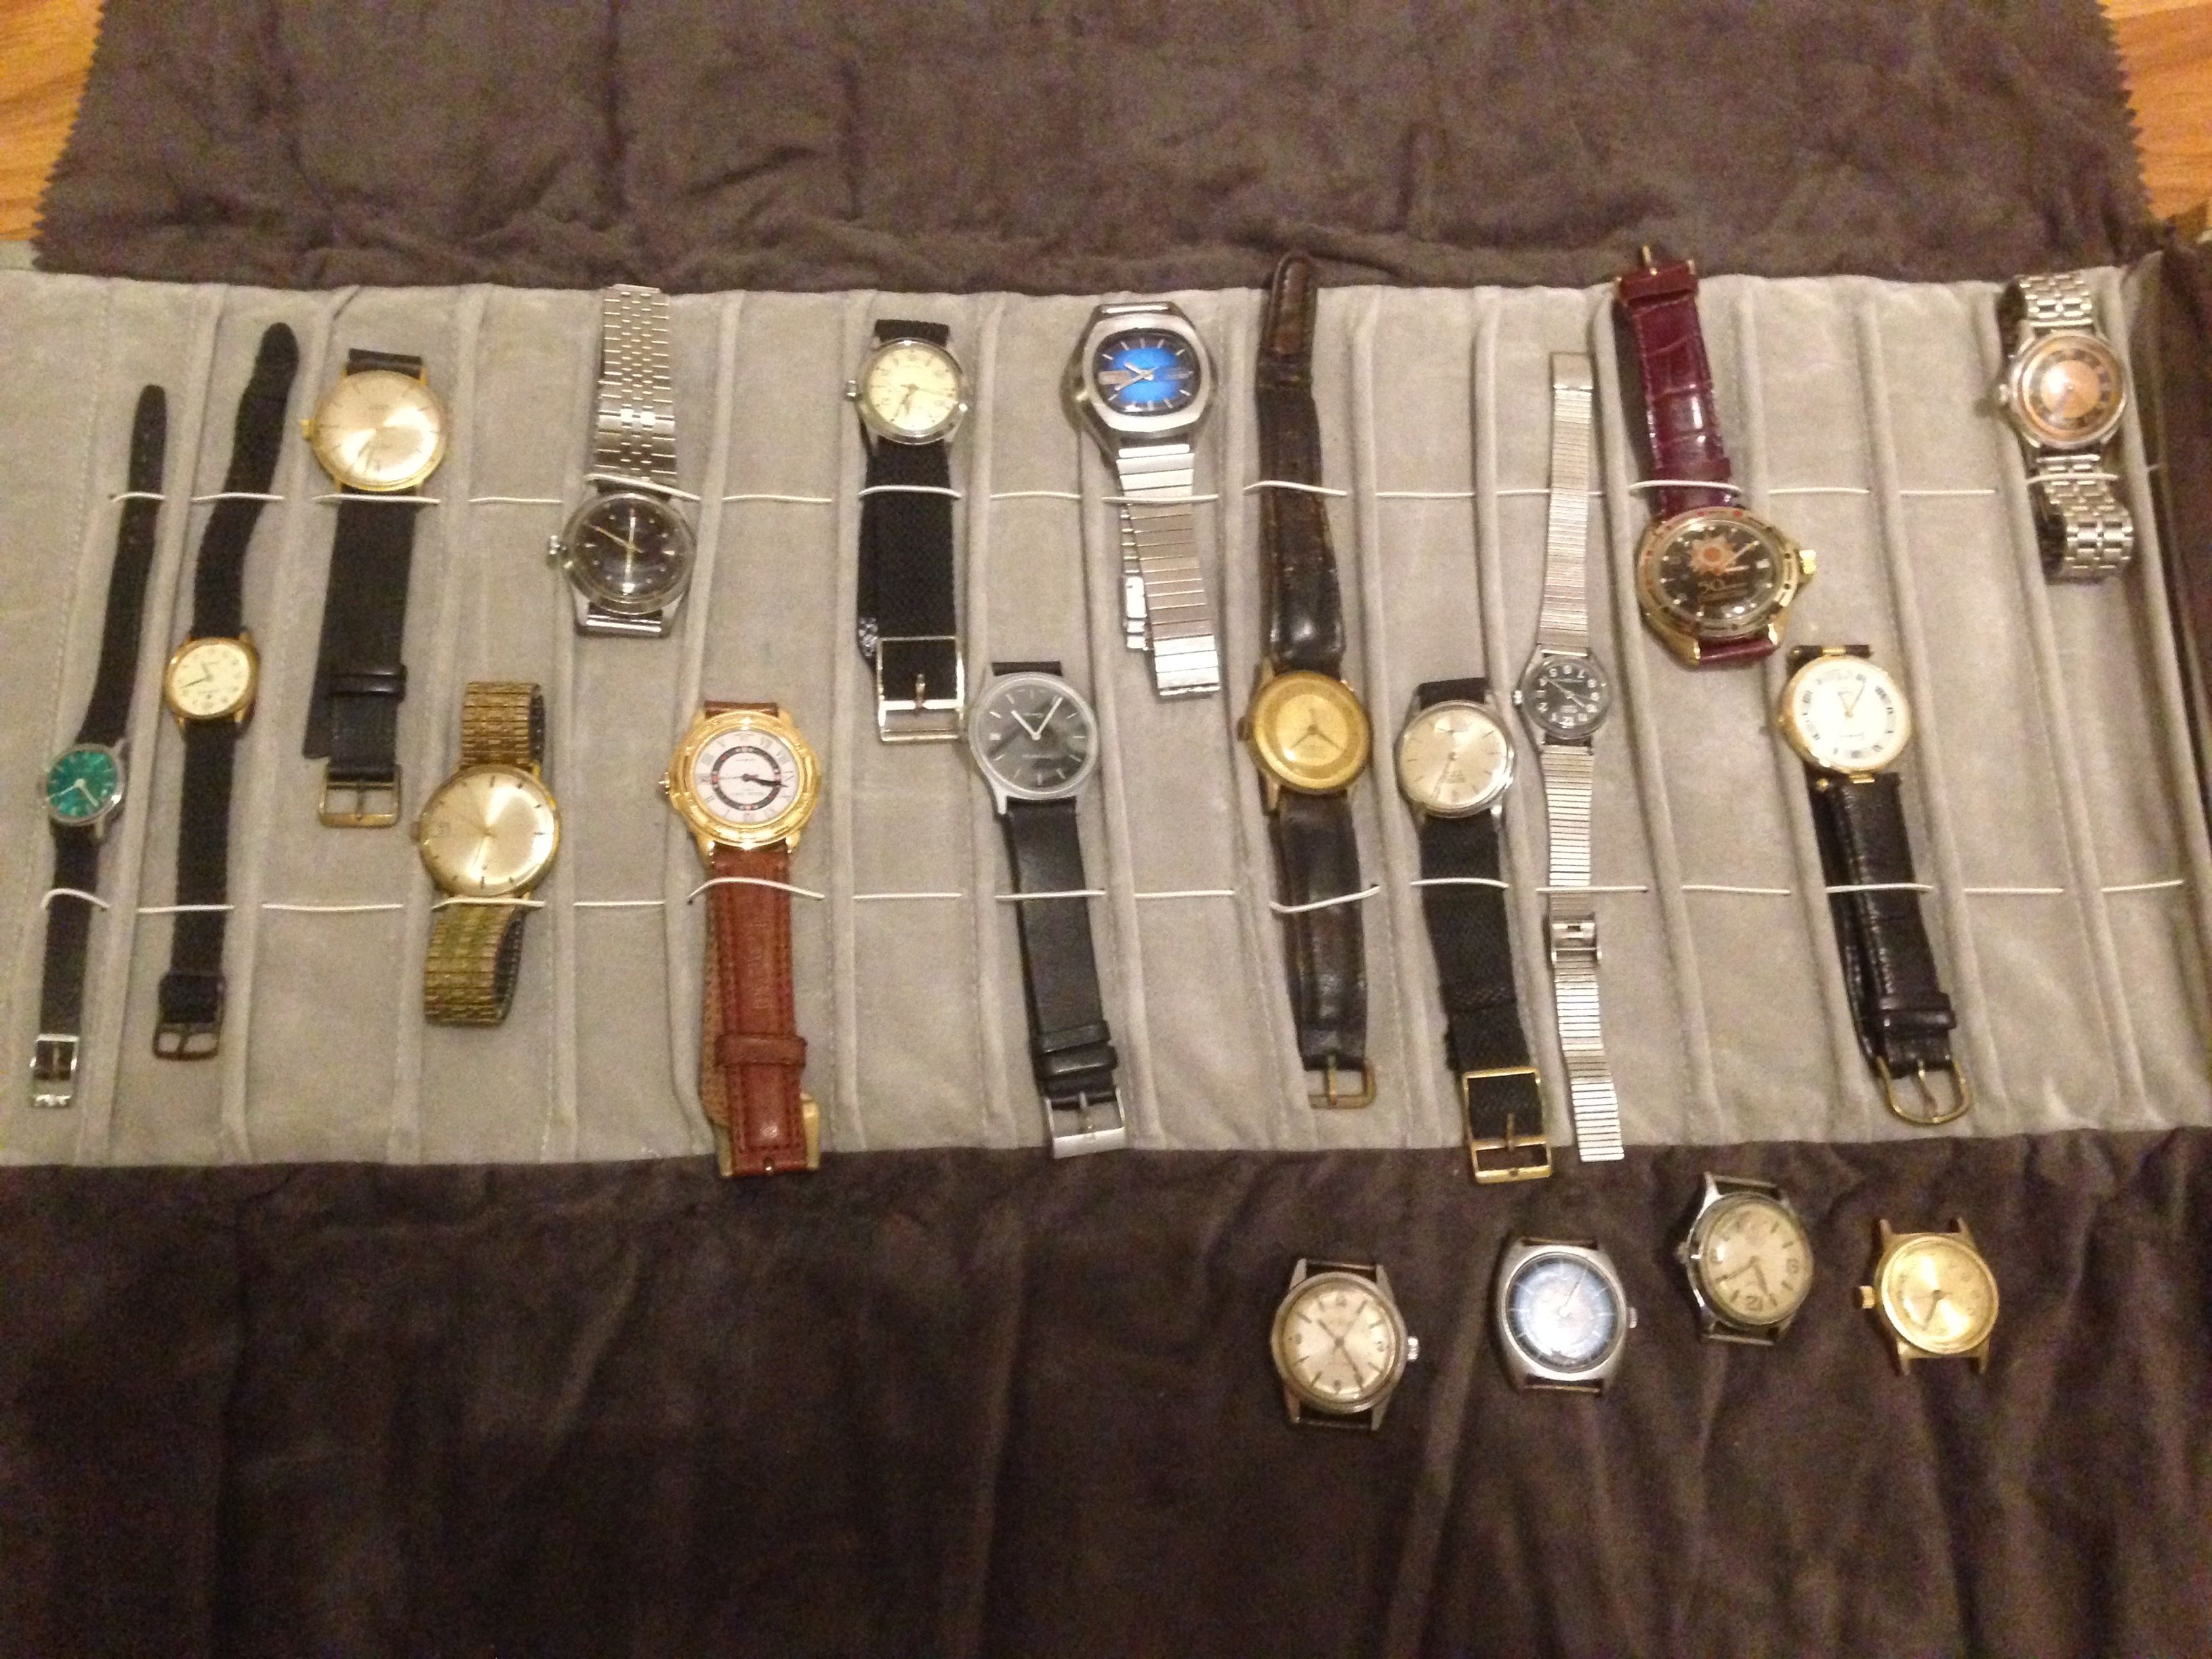 Peave pakket winkelwagen Mijn vintage verzameling verkopen of niet - Vintage Horlogeforum -  Horlogeforum.nl - het forum voor liefhebbers van horloges